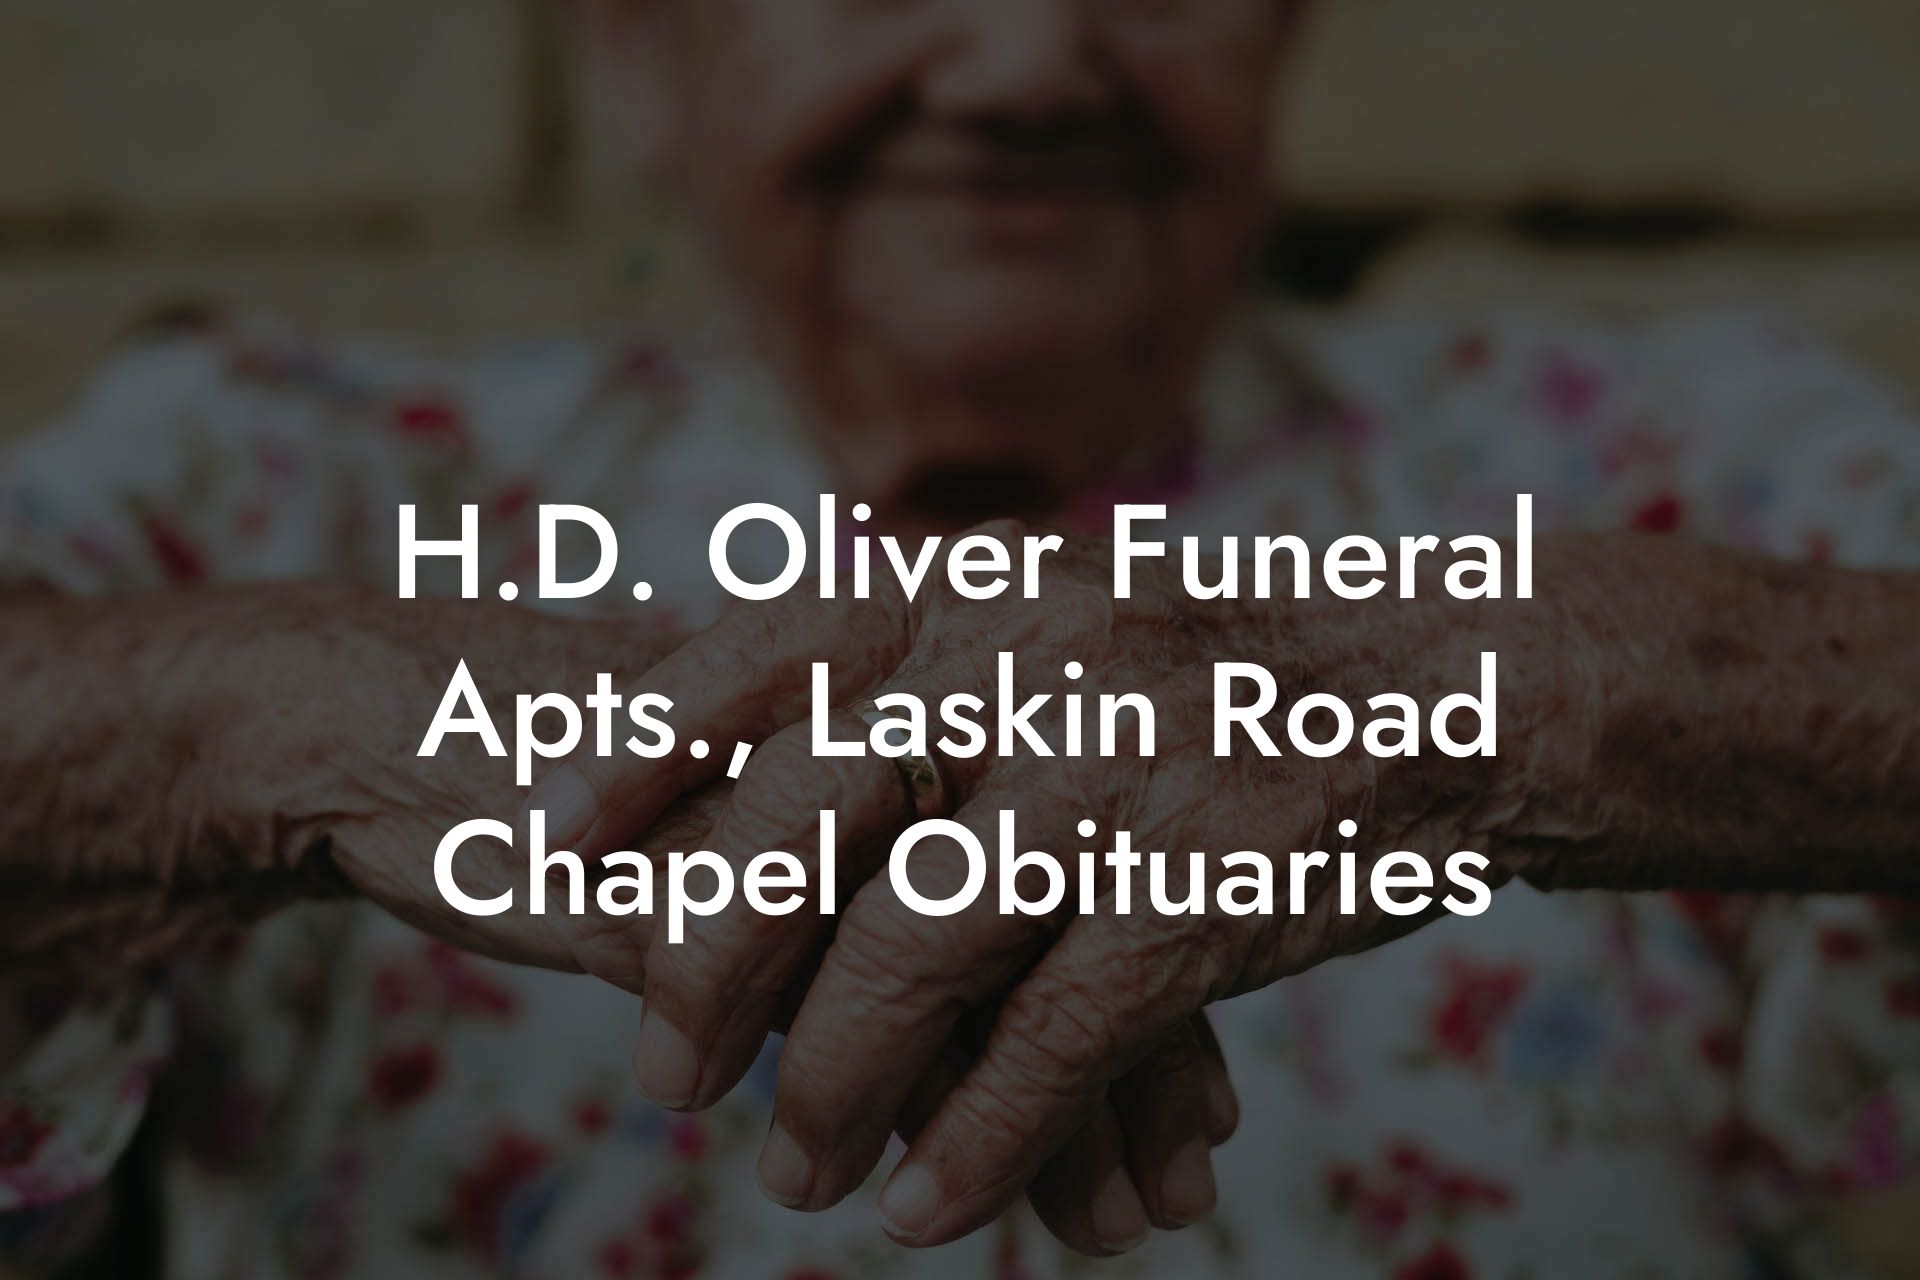 H.D. Oliver Funeral Apts., Laskin Road Chapel Obituaries